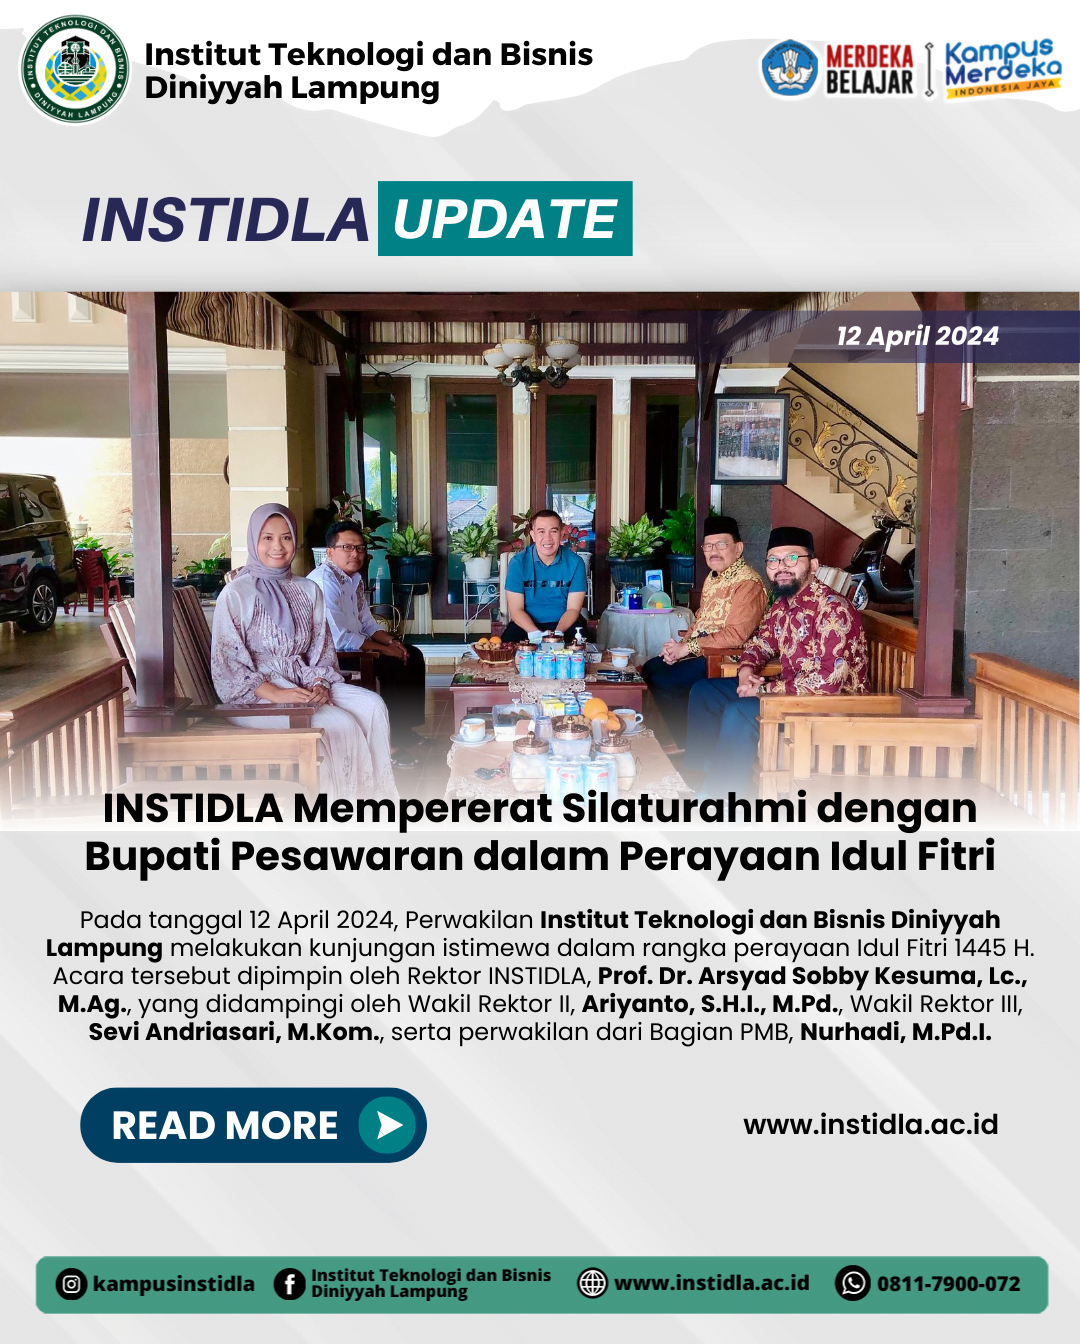 Institut Teknologi dan Bisnis Diniyyah Lampung Mempererat Silaturahmi dengan Bupati Pesawaran dalam Perayaan Idul Fitri